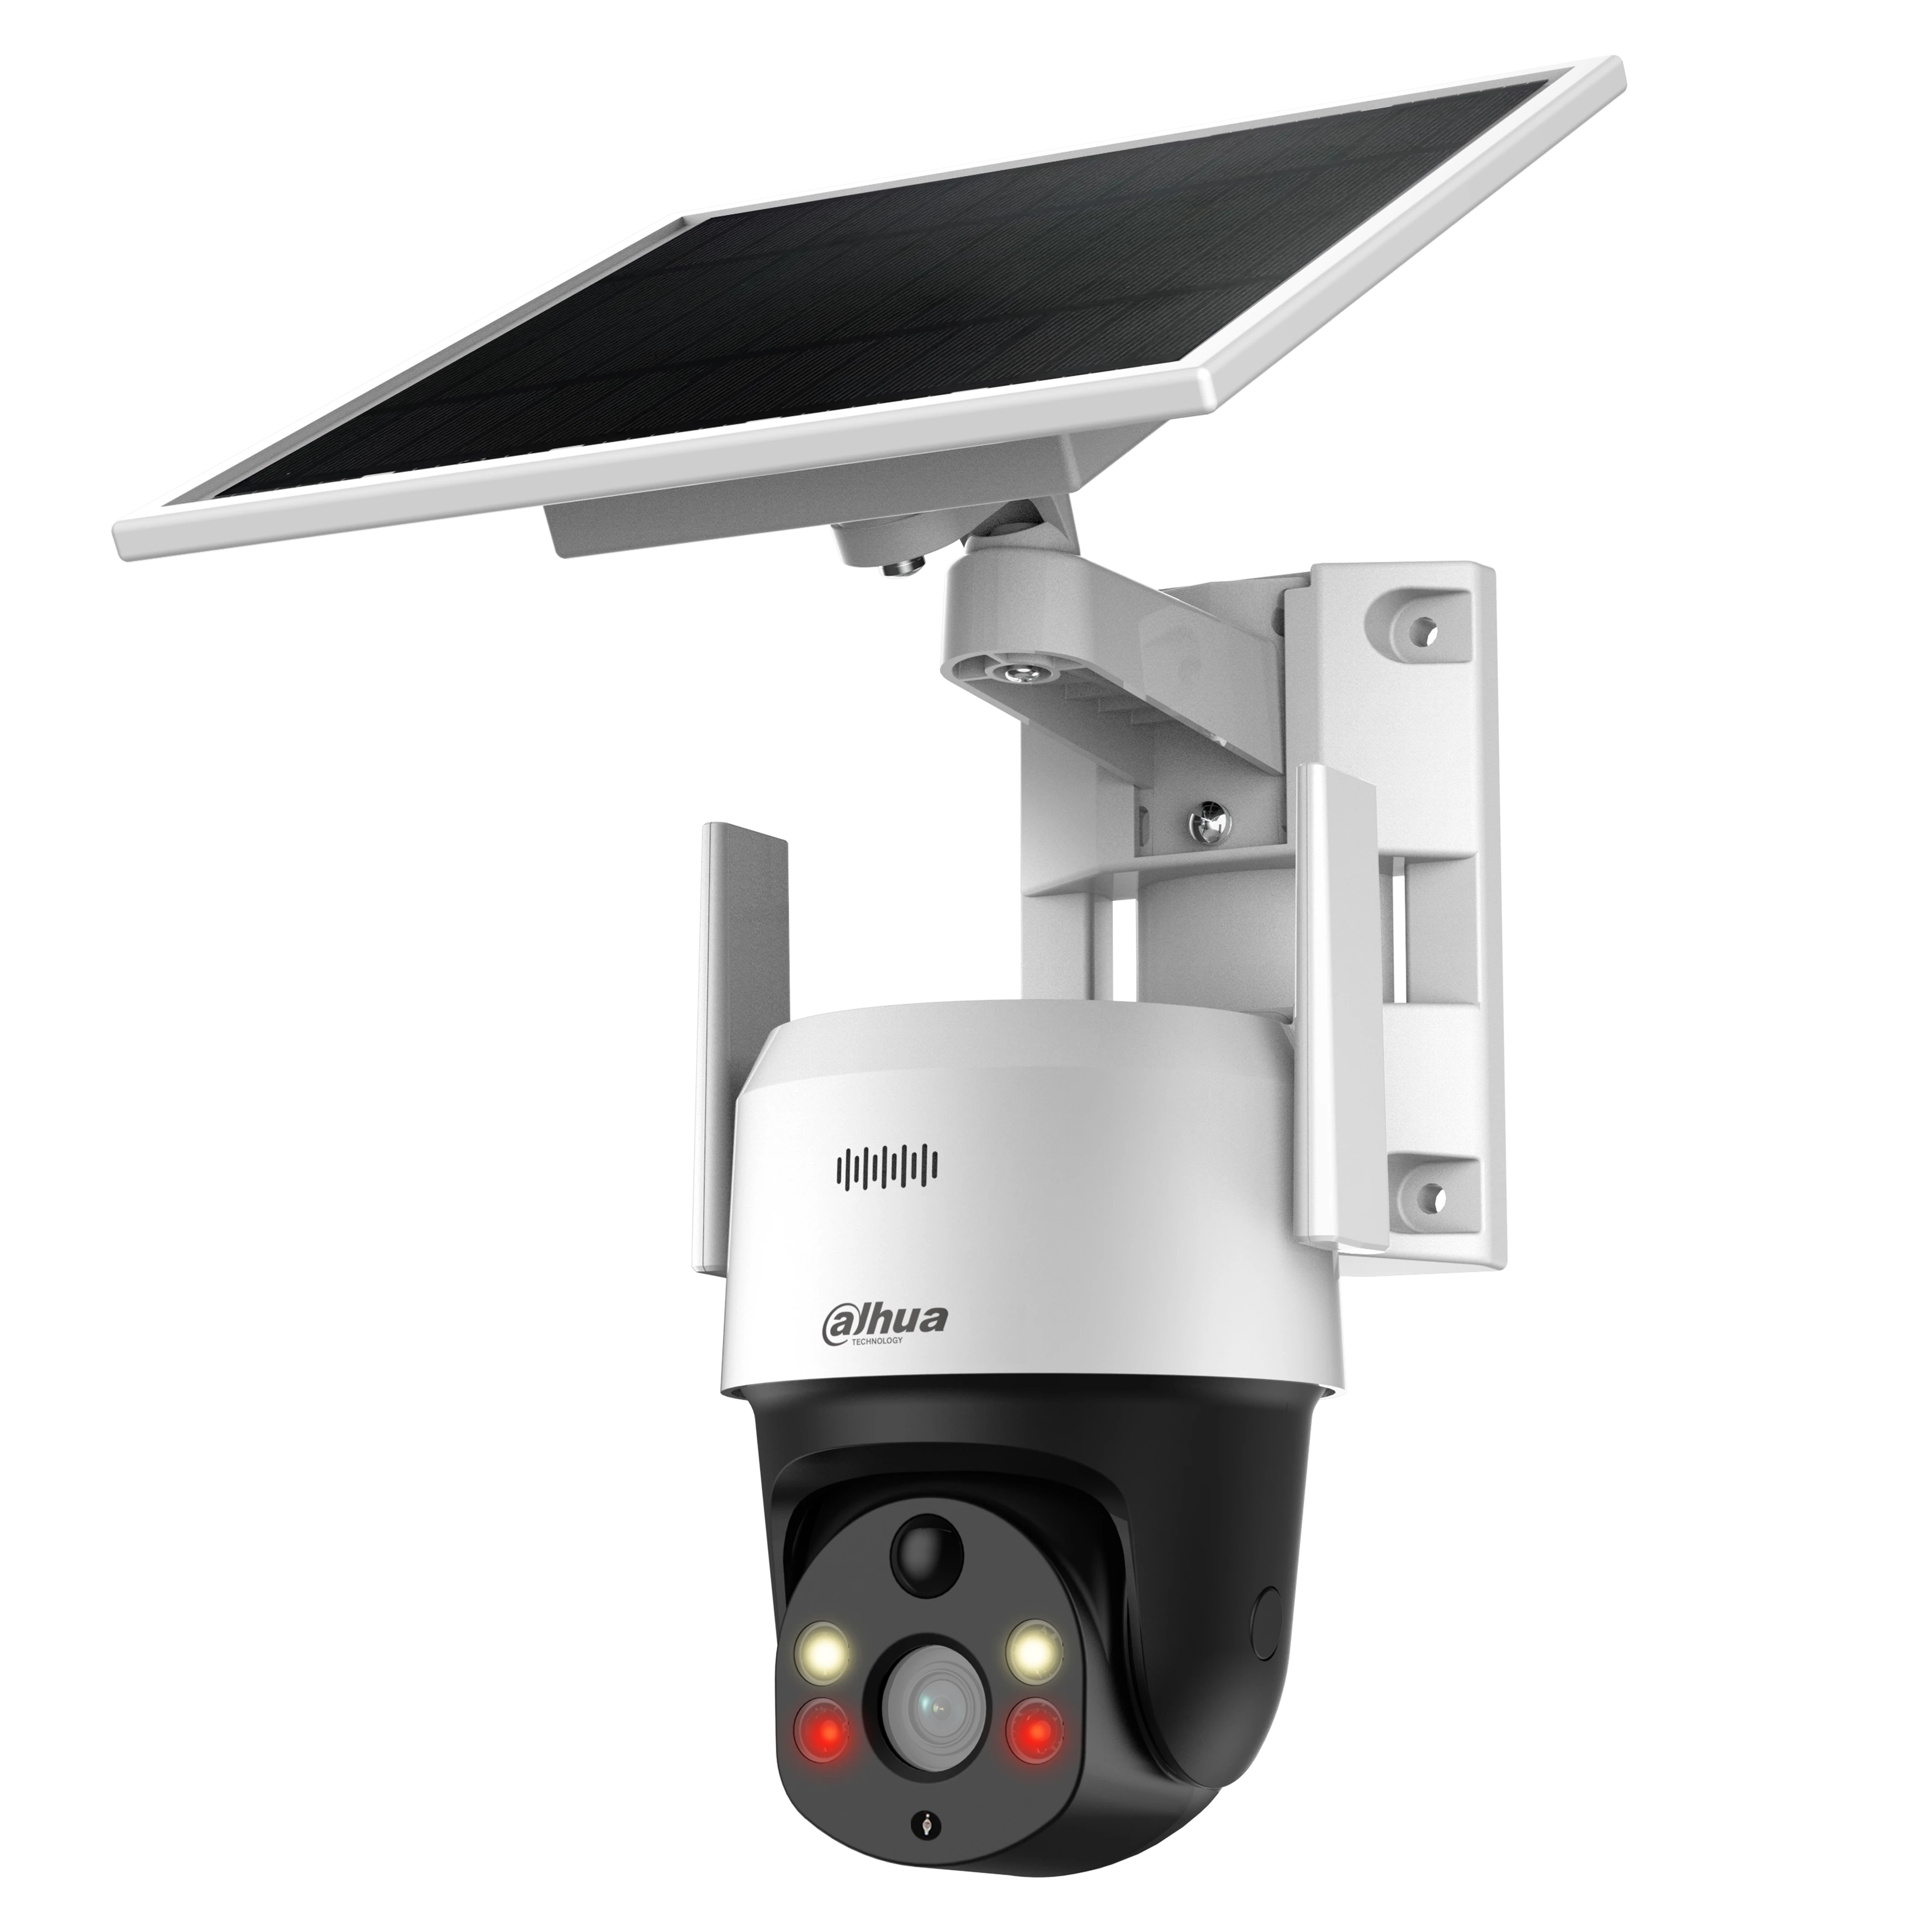 Camara de vigilancia exterior WIFI IP - PTZ Con Micro SD